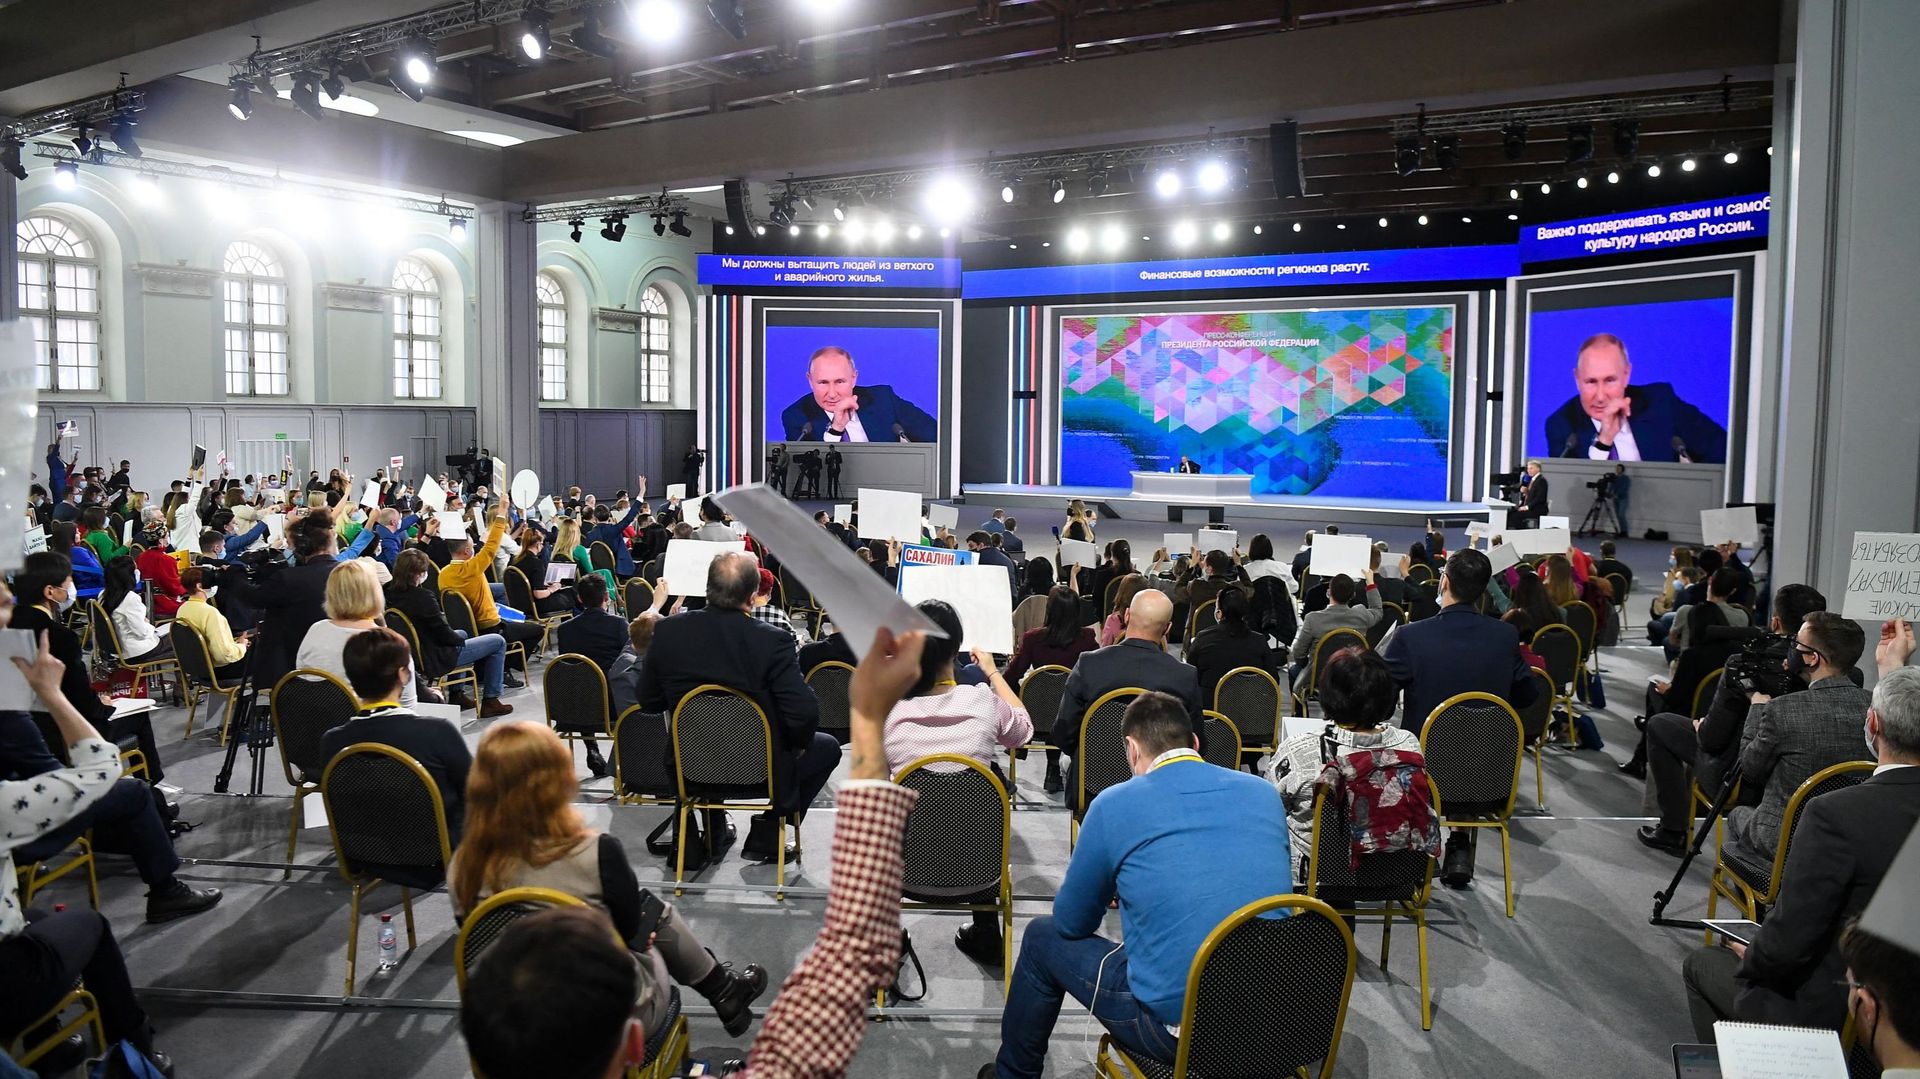 Le président russe Vladimir Poutine tient sa conférence de presse annuelle à la salle d'exposition Manezh, à Moscou, le 23 décembre 2021. NATALIA KOLESNIKOVA / AFP